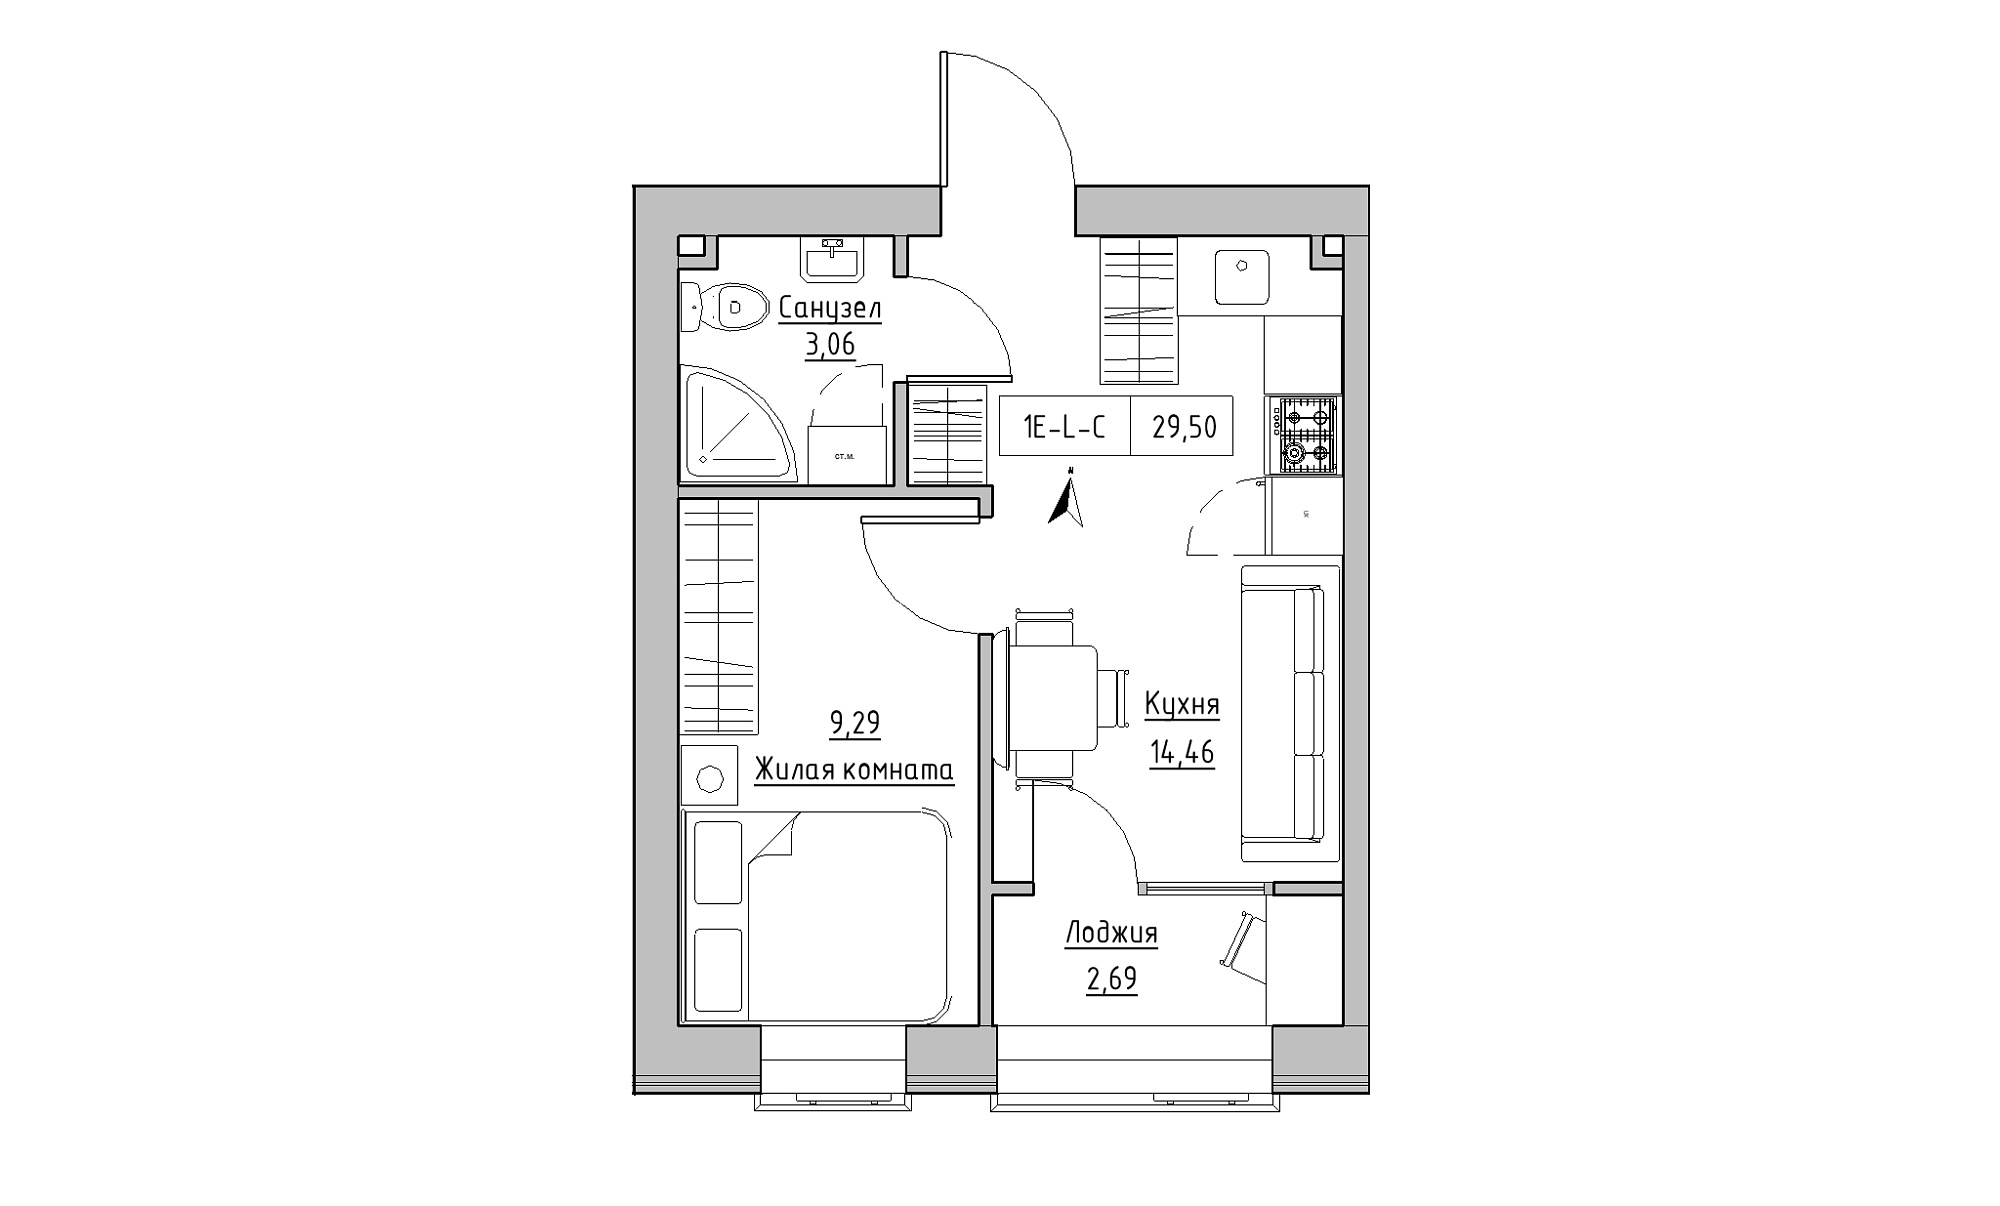 Планировка 1-к квартира площей 29.5м2, KS-023-02/0011.